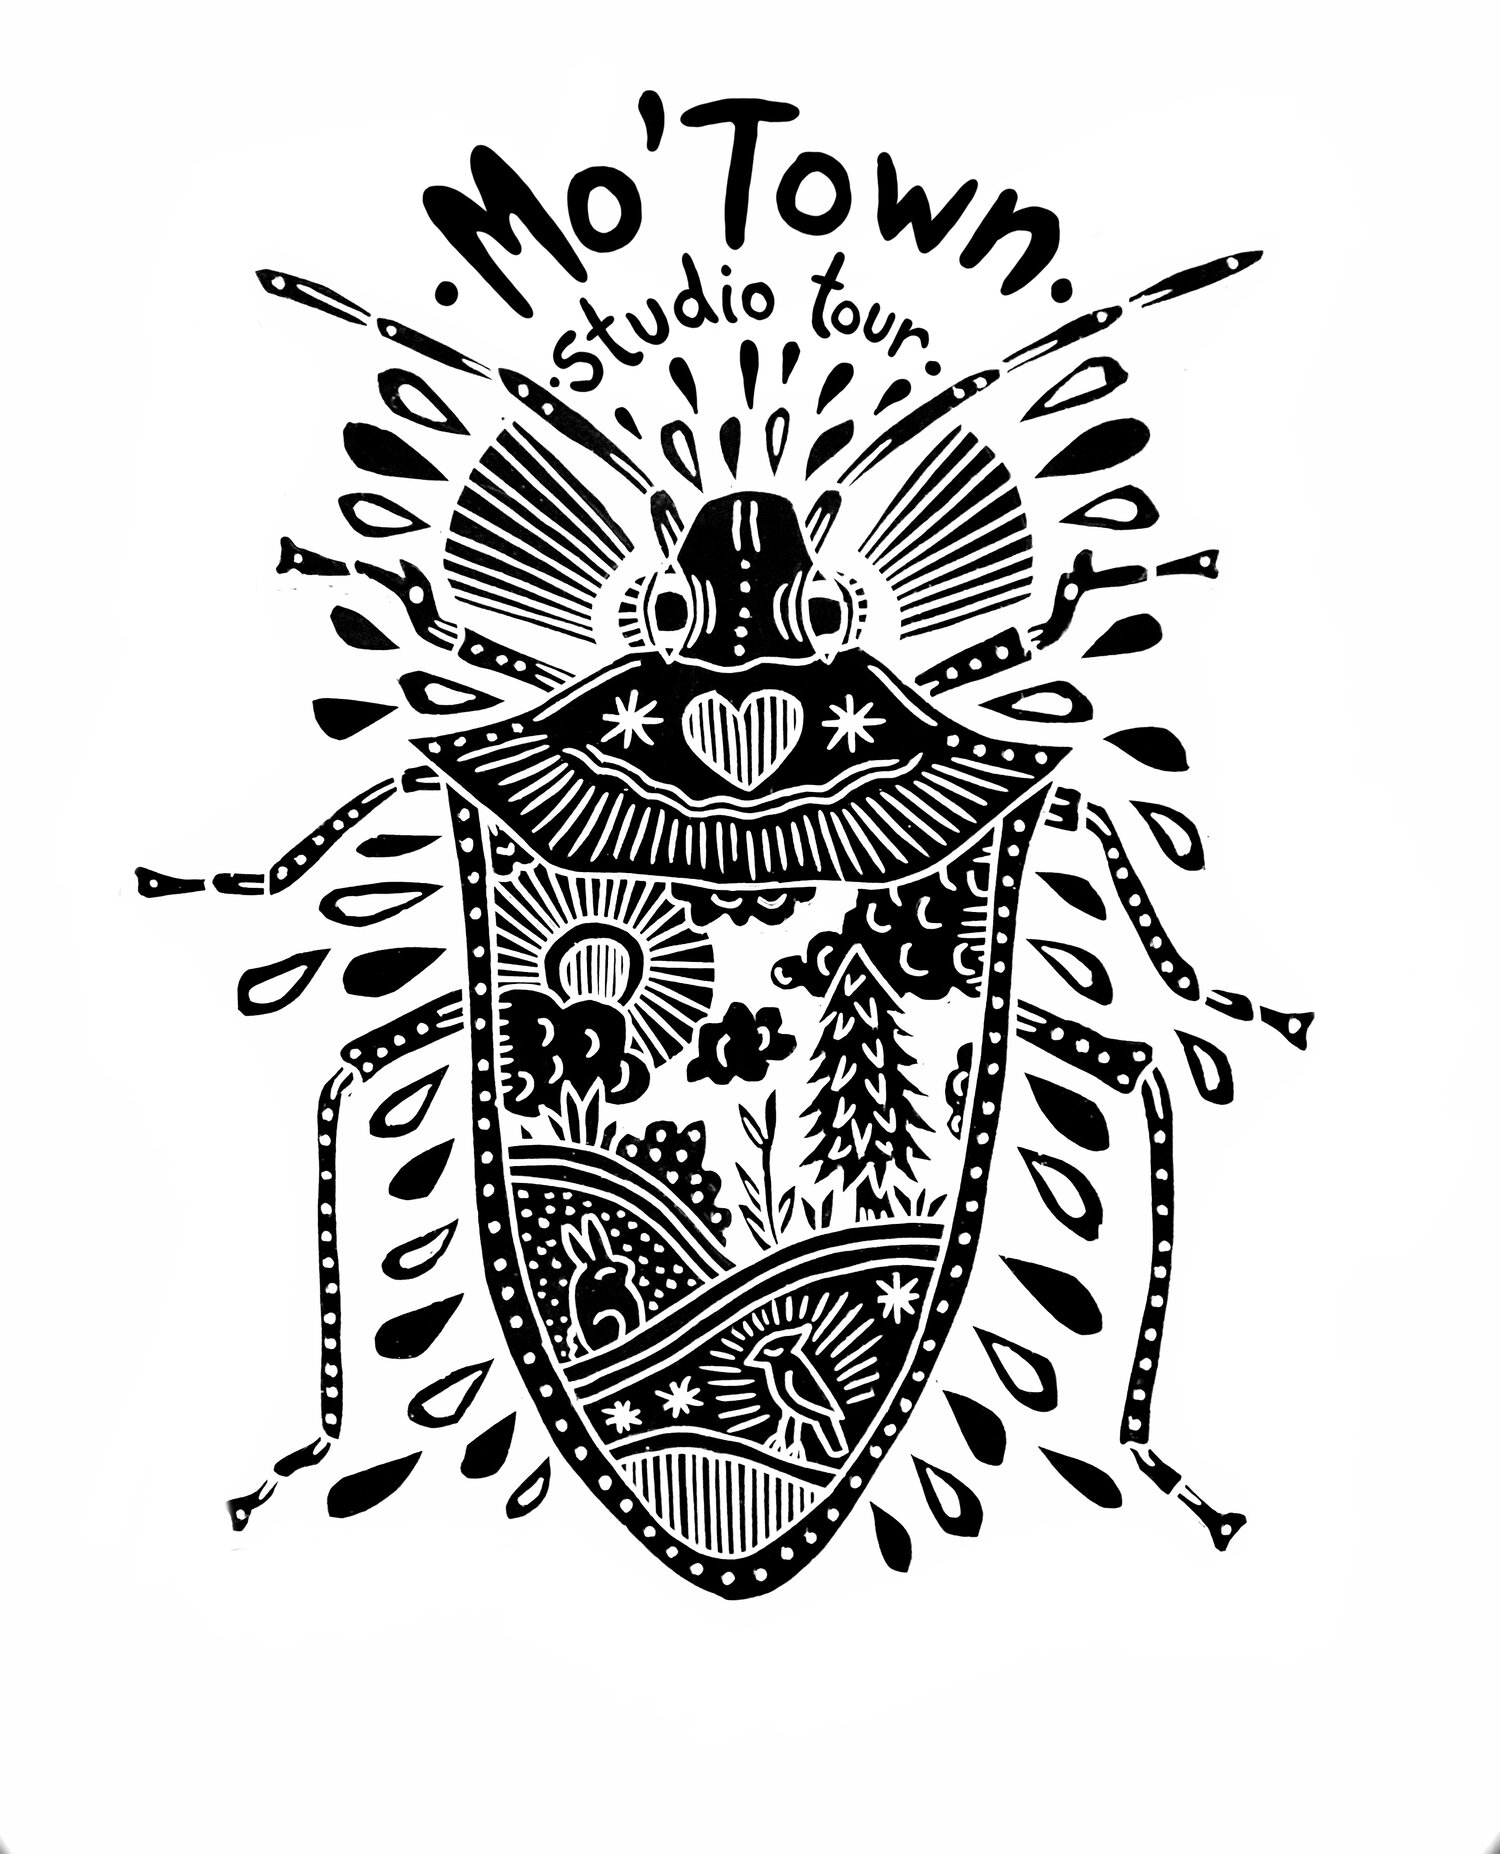 Mo'town Studio Tour